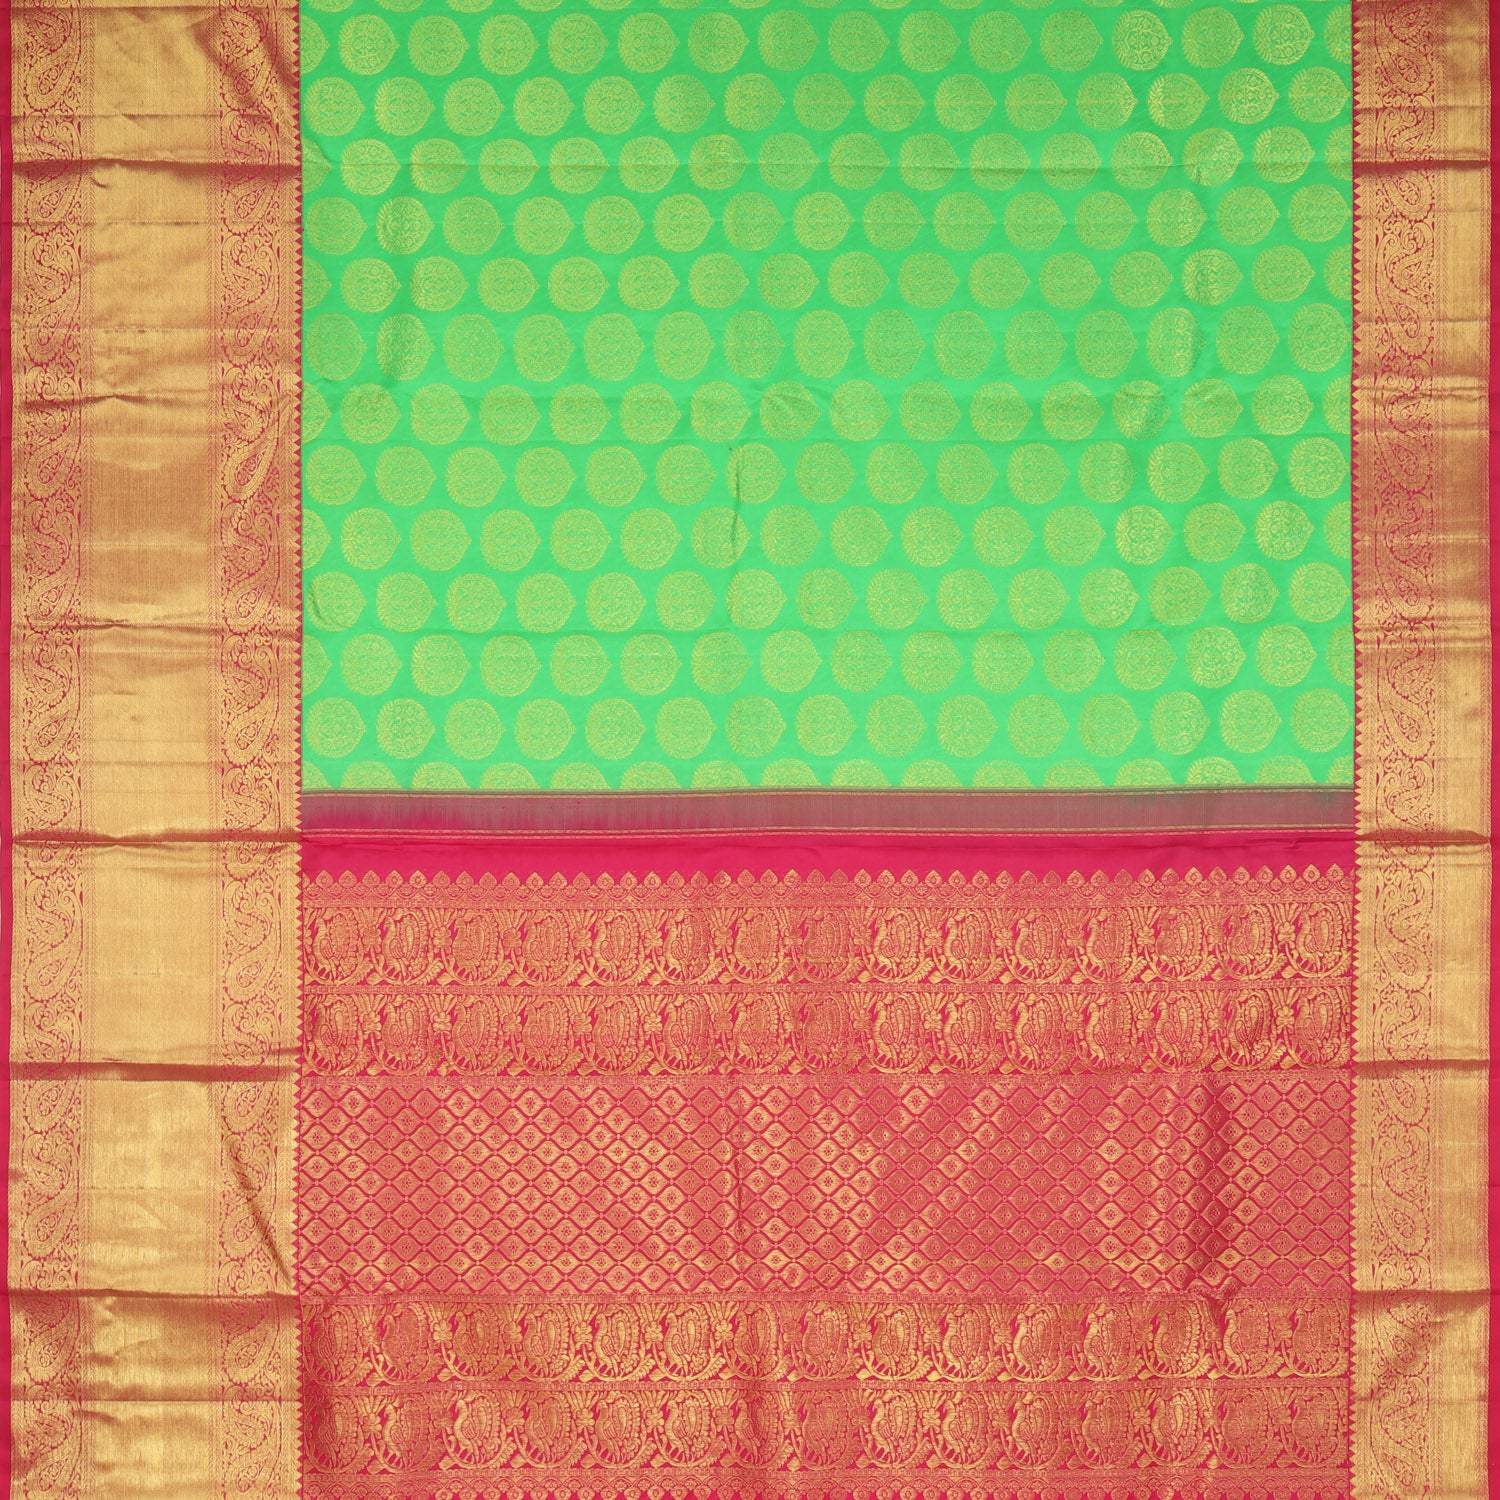 Green Kanjivaram Silk Saree With Floral Buttas - Singhania's